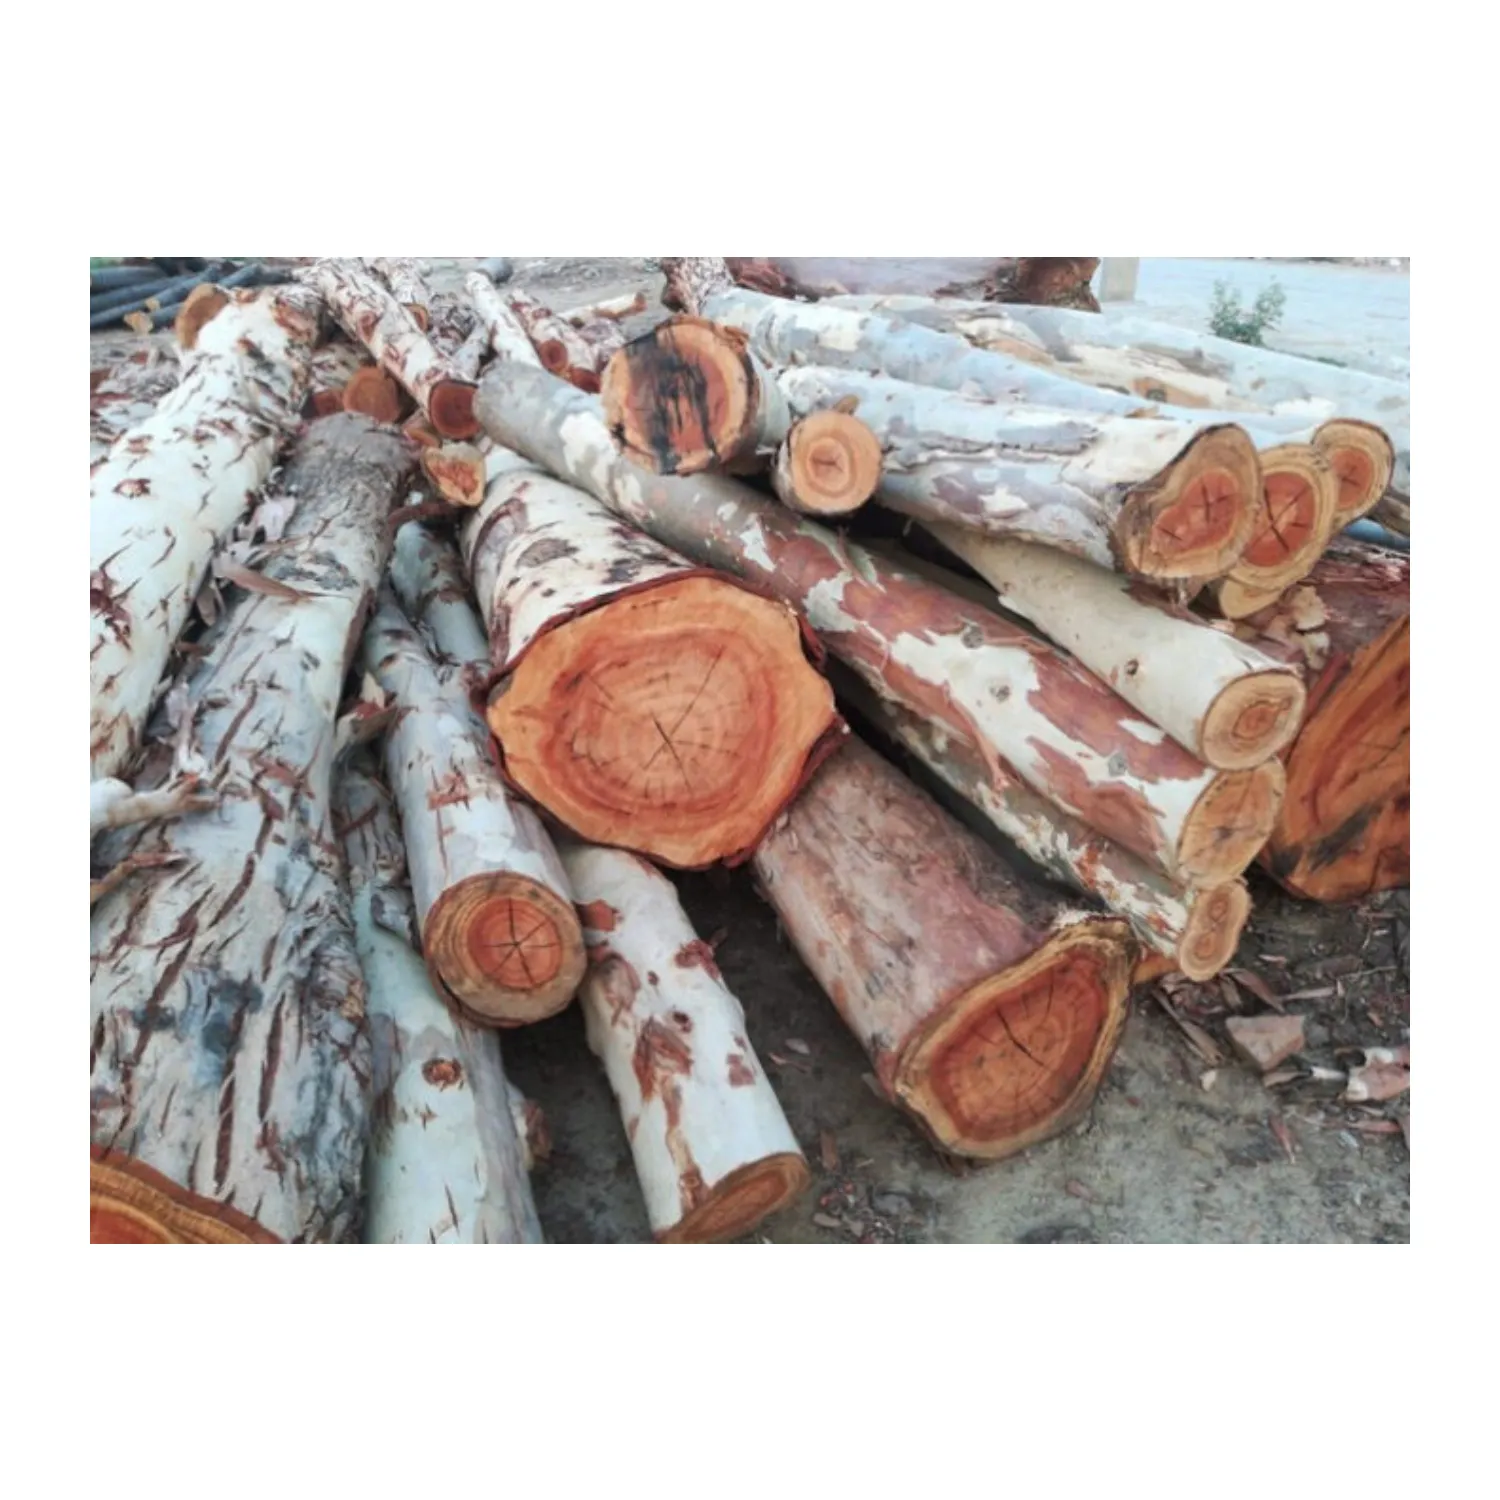 Gran oferta-troncos de madera de eucalipto a precio barato y buena calidad de VIETNAM